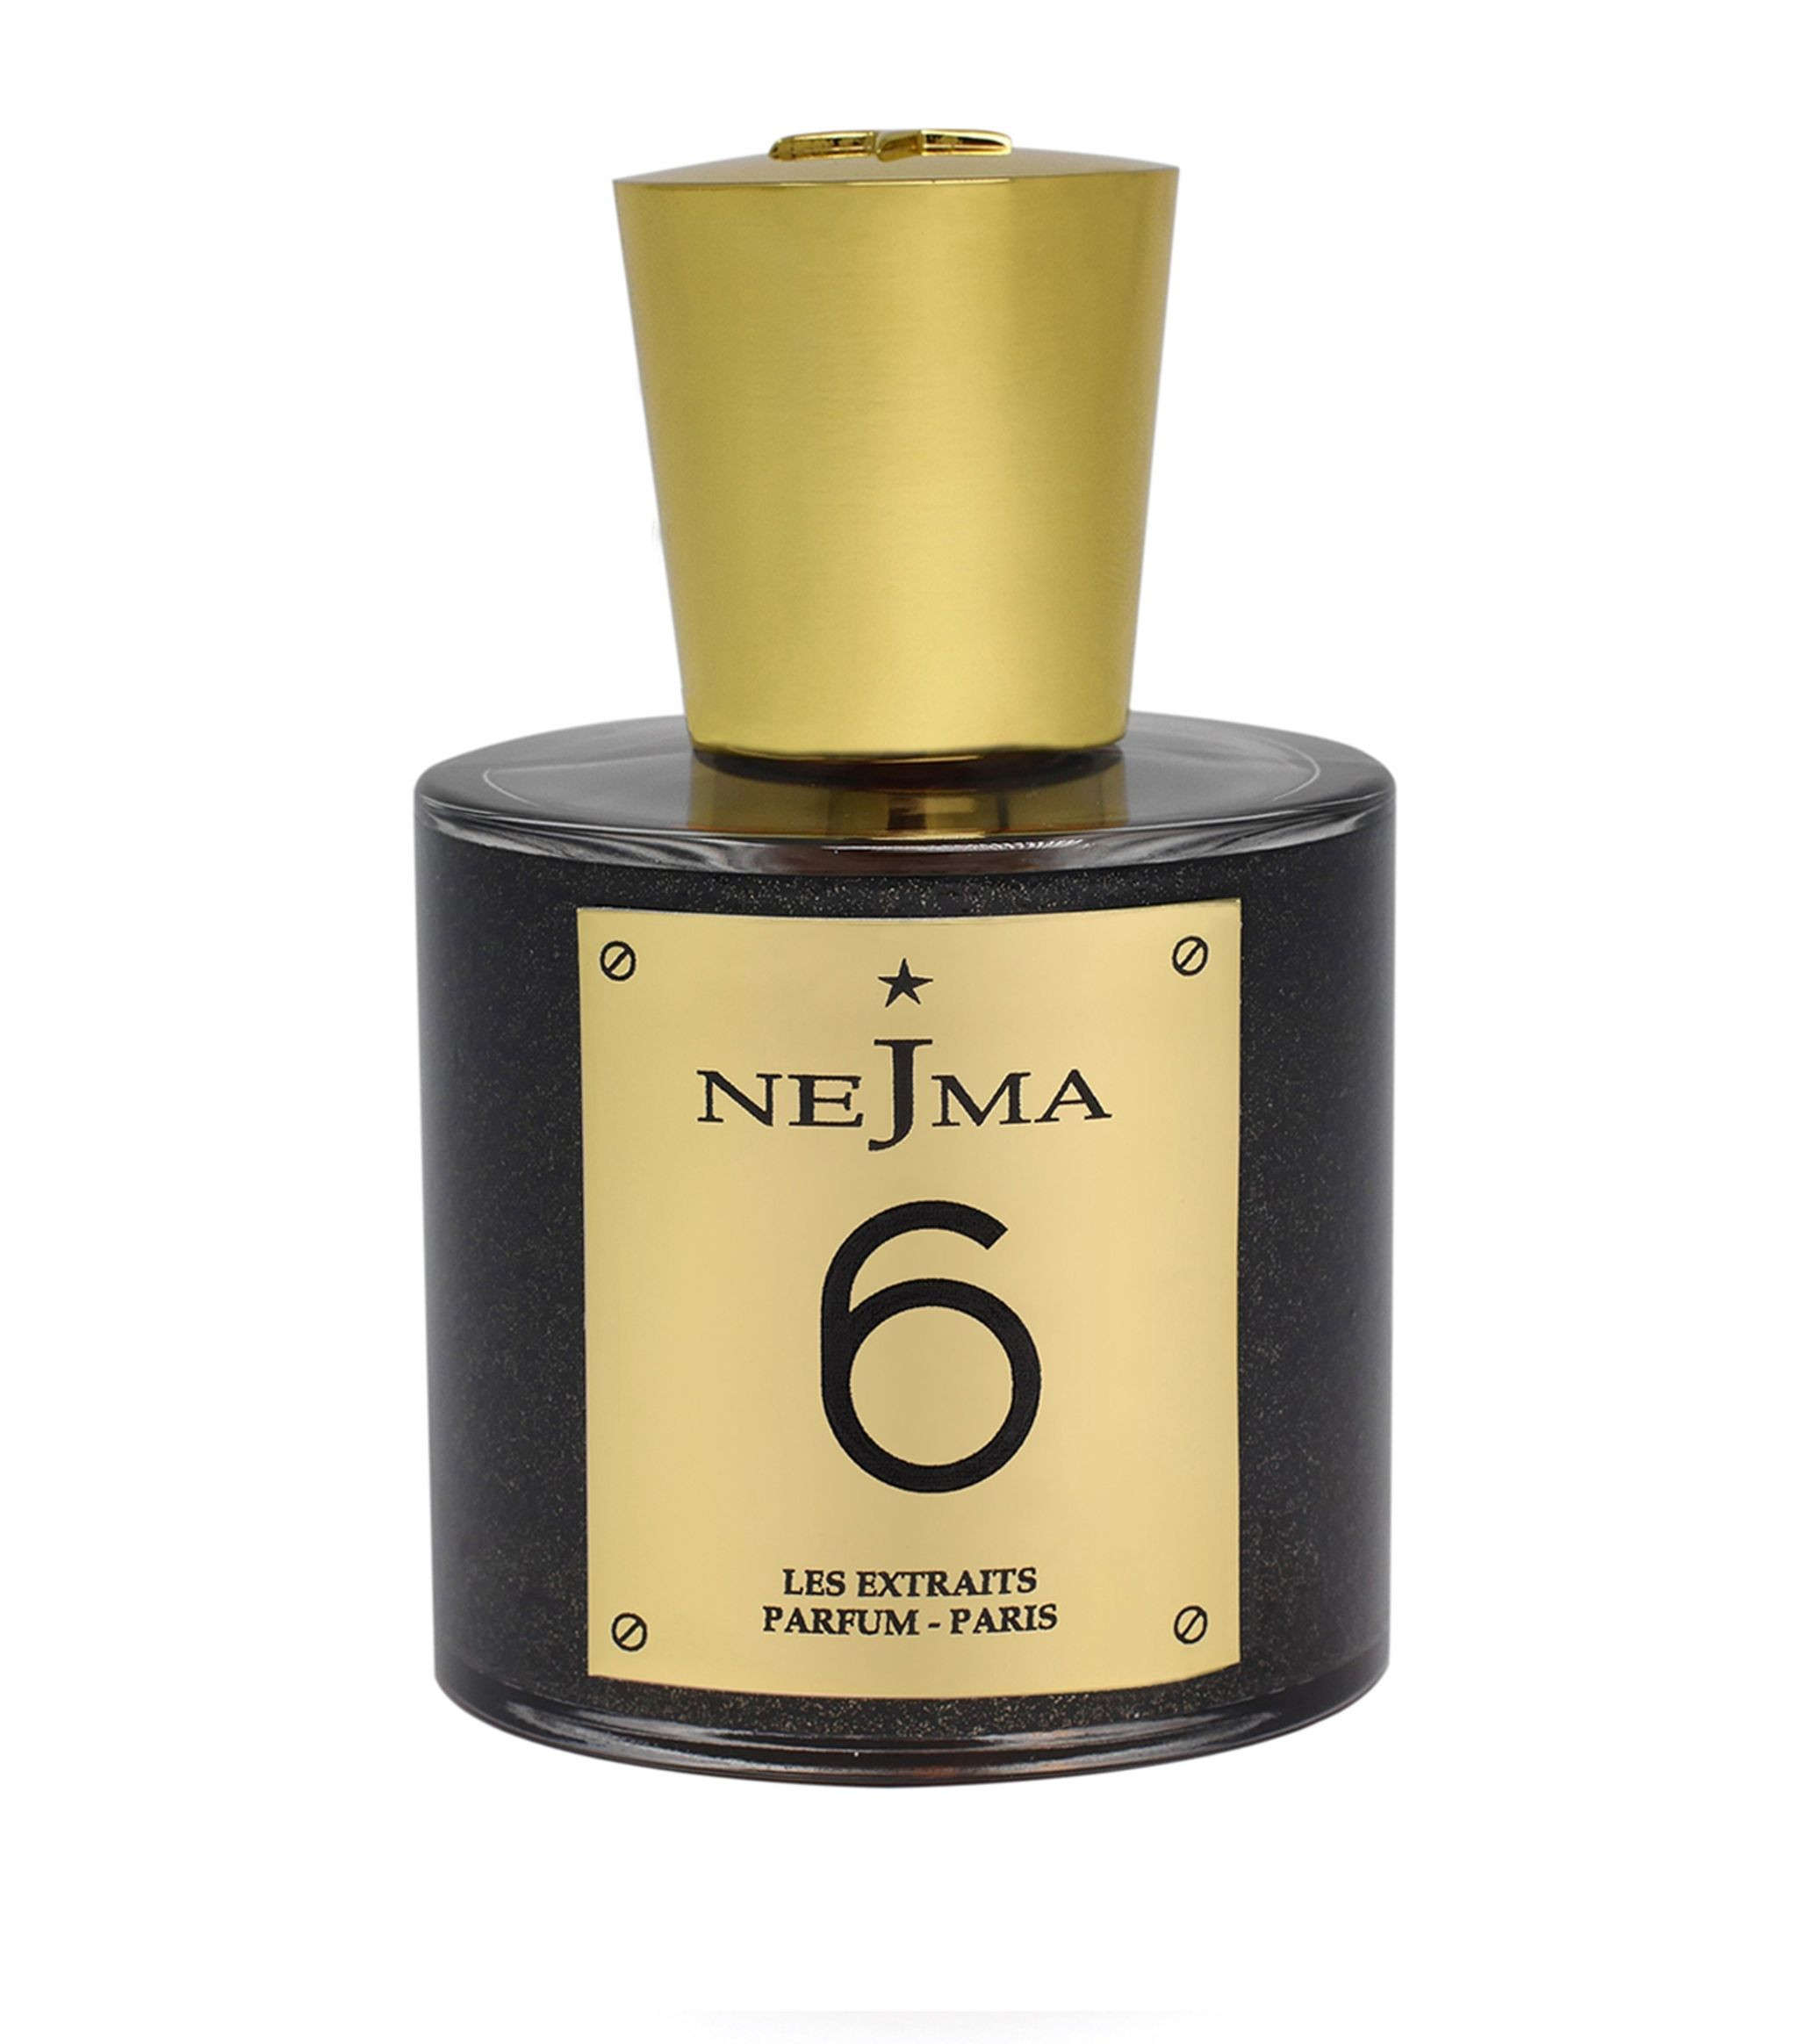 Nejma Les Extraits 6 10 ml NIŠINIAI kvepalų mėginukas (atomaizeris) Unisex Parfum